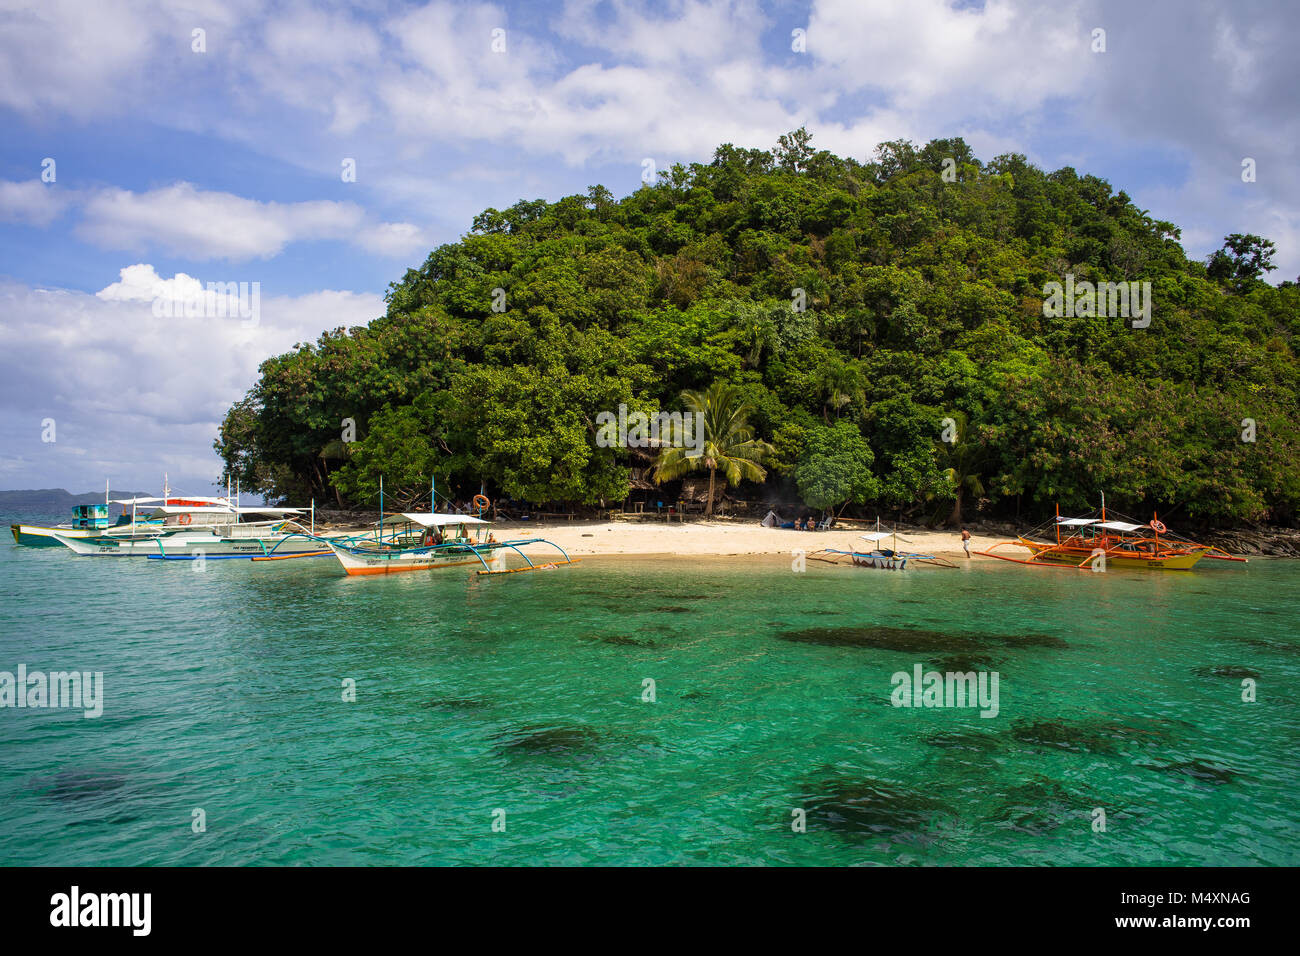 paradise island Stock Photo